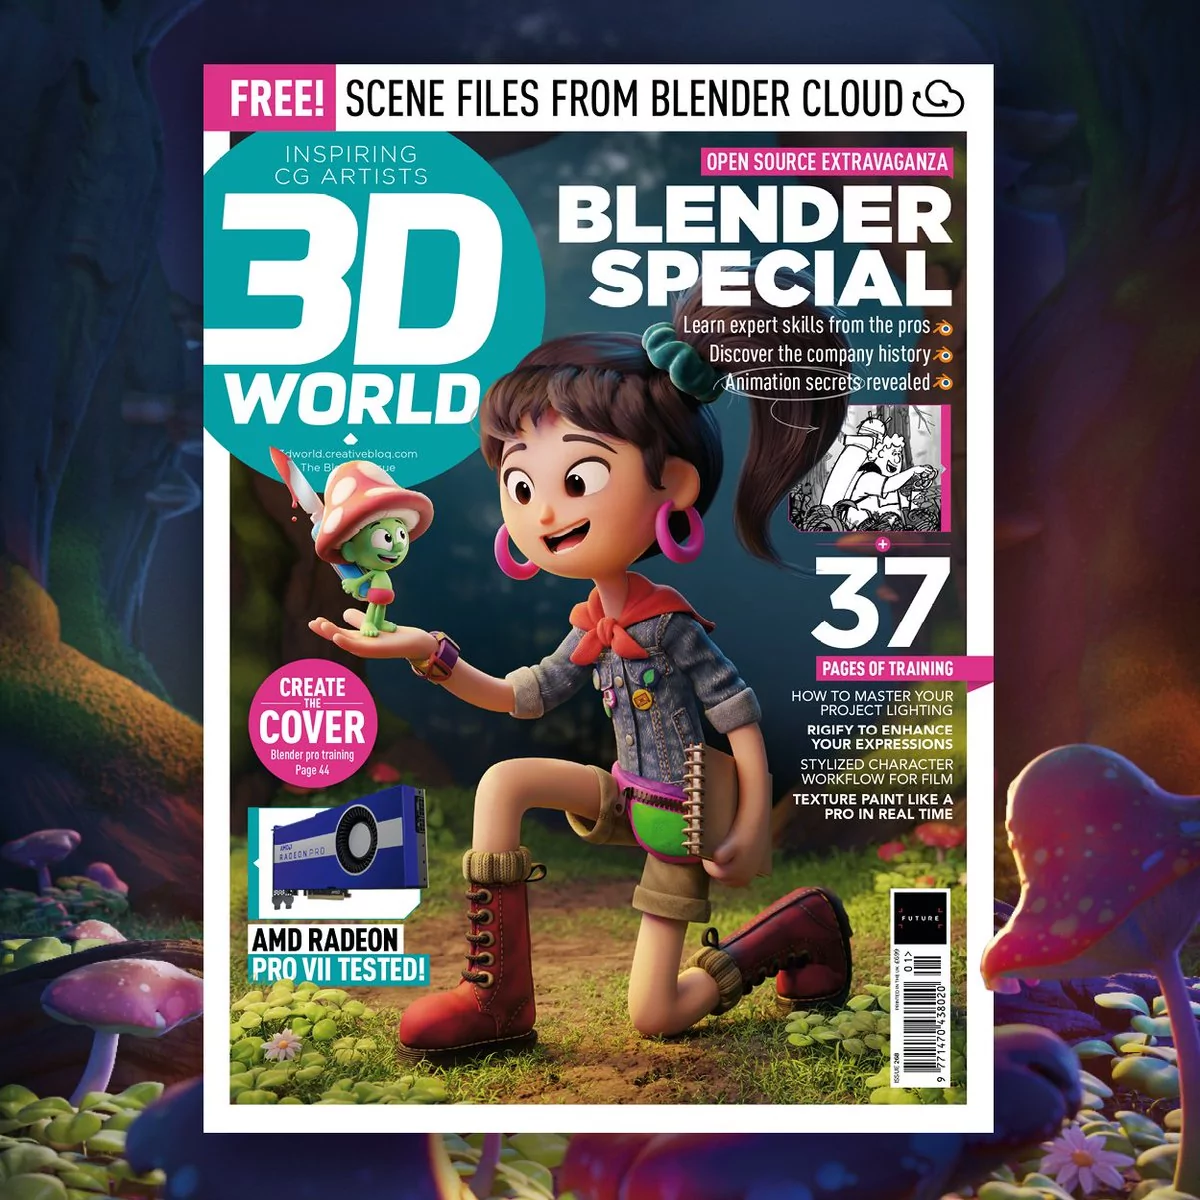 2D World Blender special